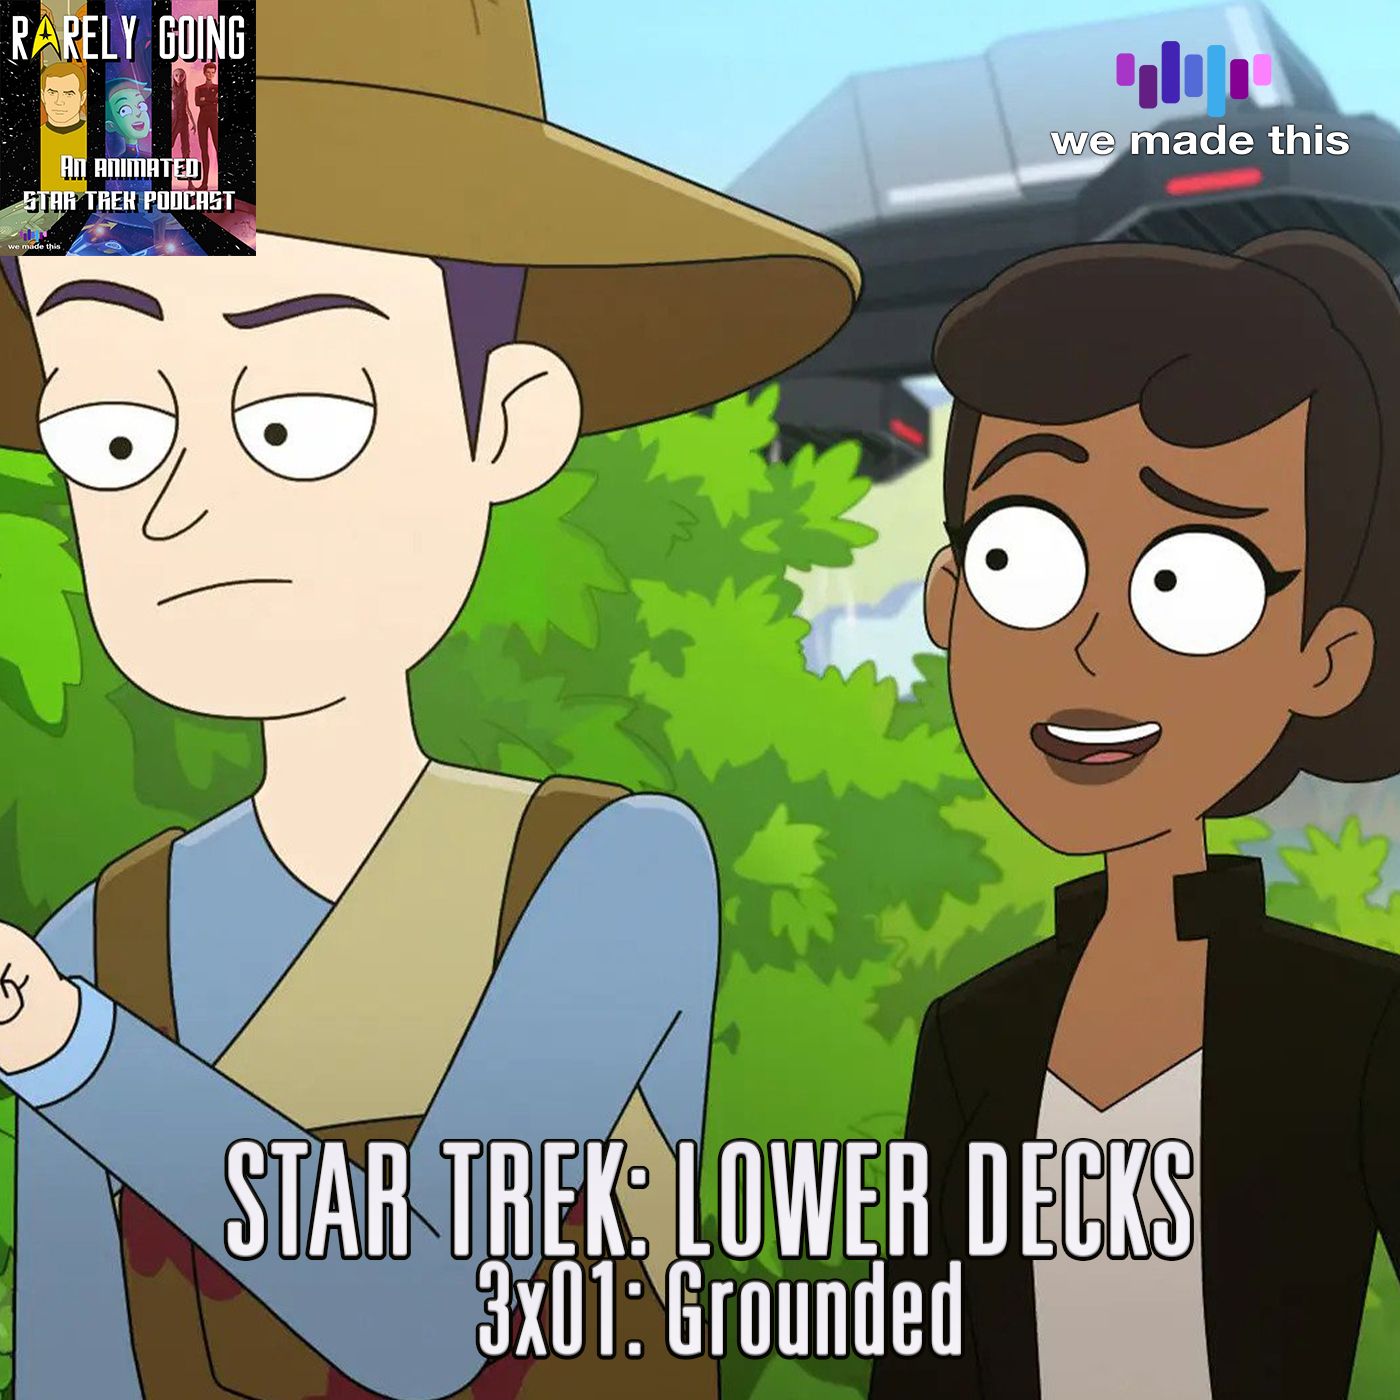 41. Star Trek: Lower Decks 3x01 - Grounded